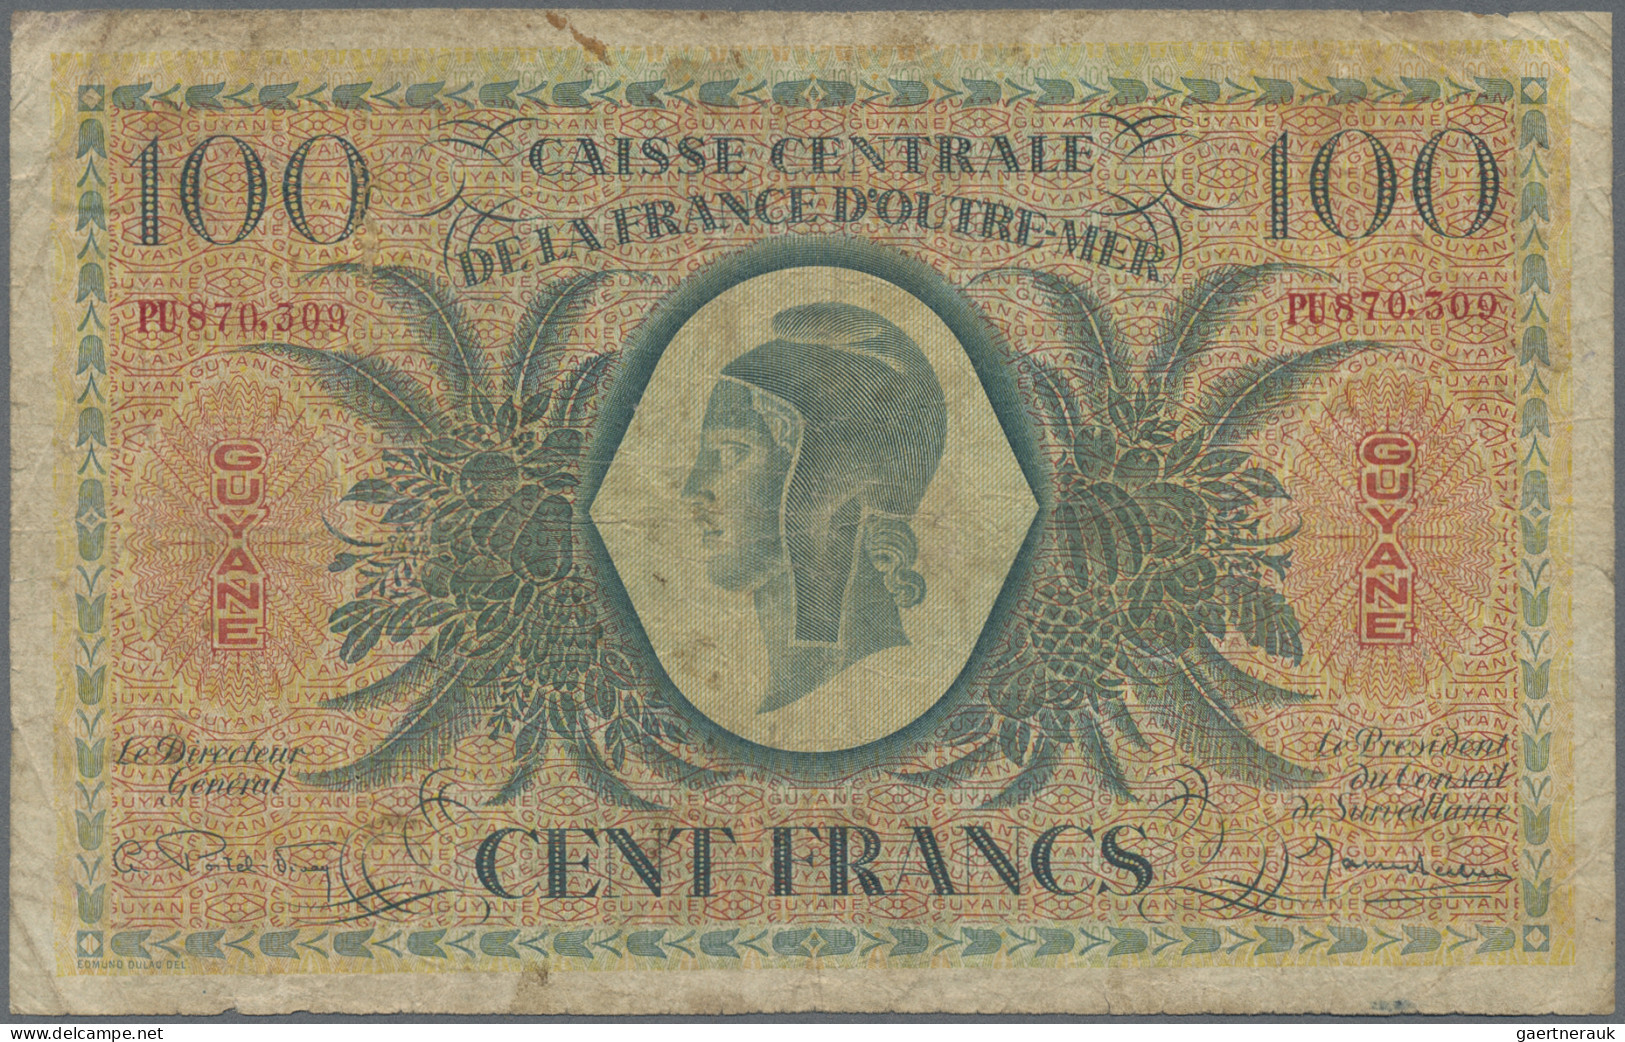 French Guiana: Banque De La Guyane And Caisse Centrale De La France D'Outre-Mer - Frans-Guyana